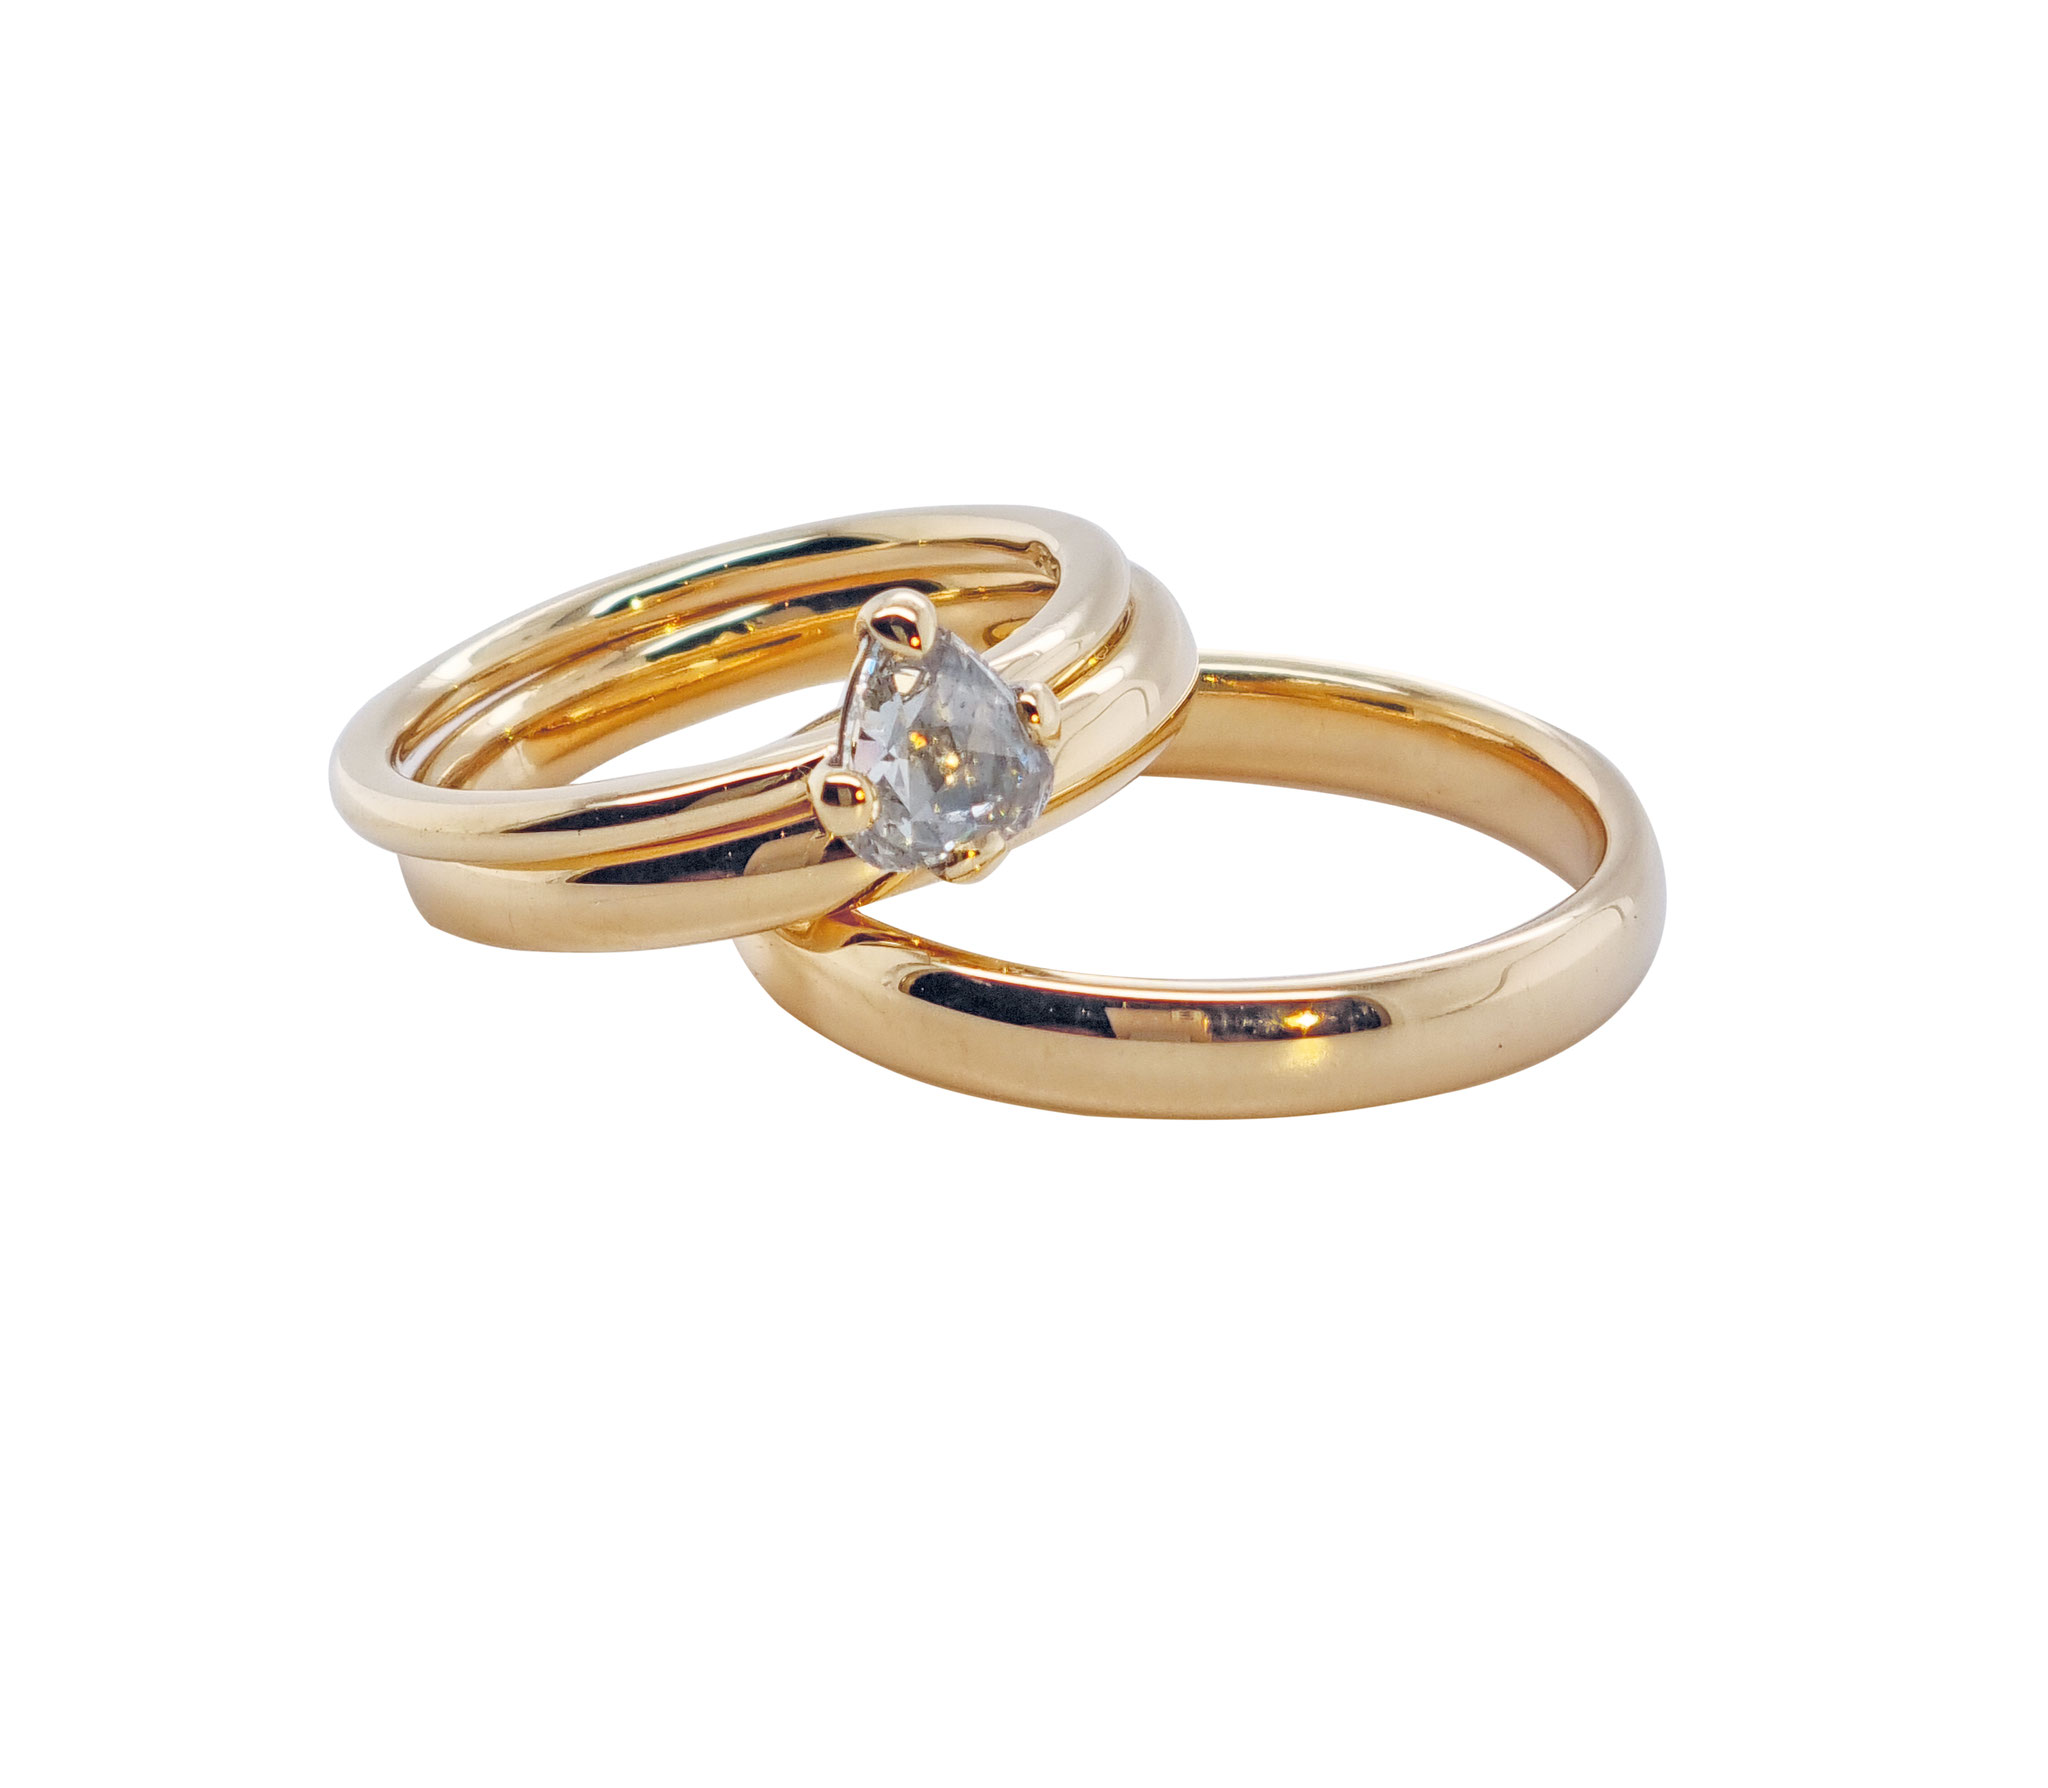 Eheringe aus 18 karat Gelbgold, Verlobungsring mit einer Diamantrose in Tropfenform